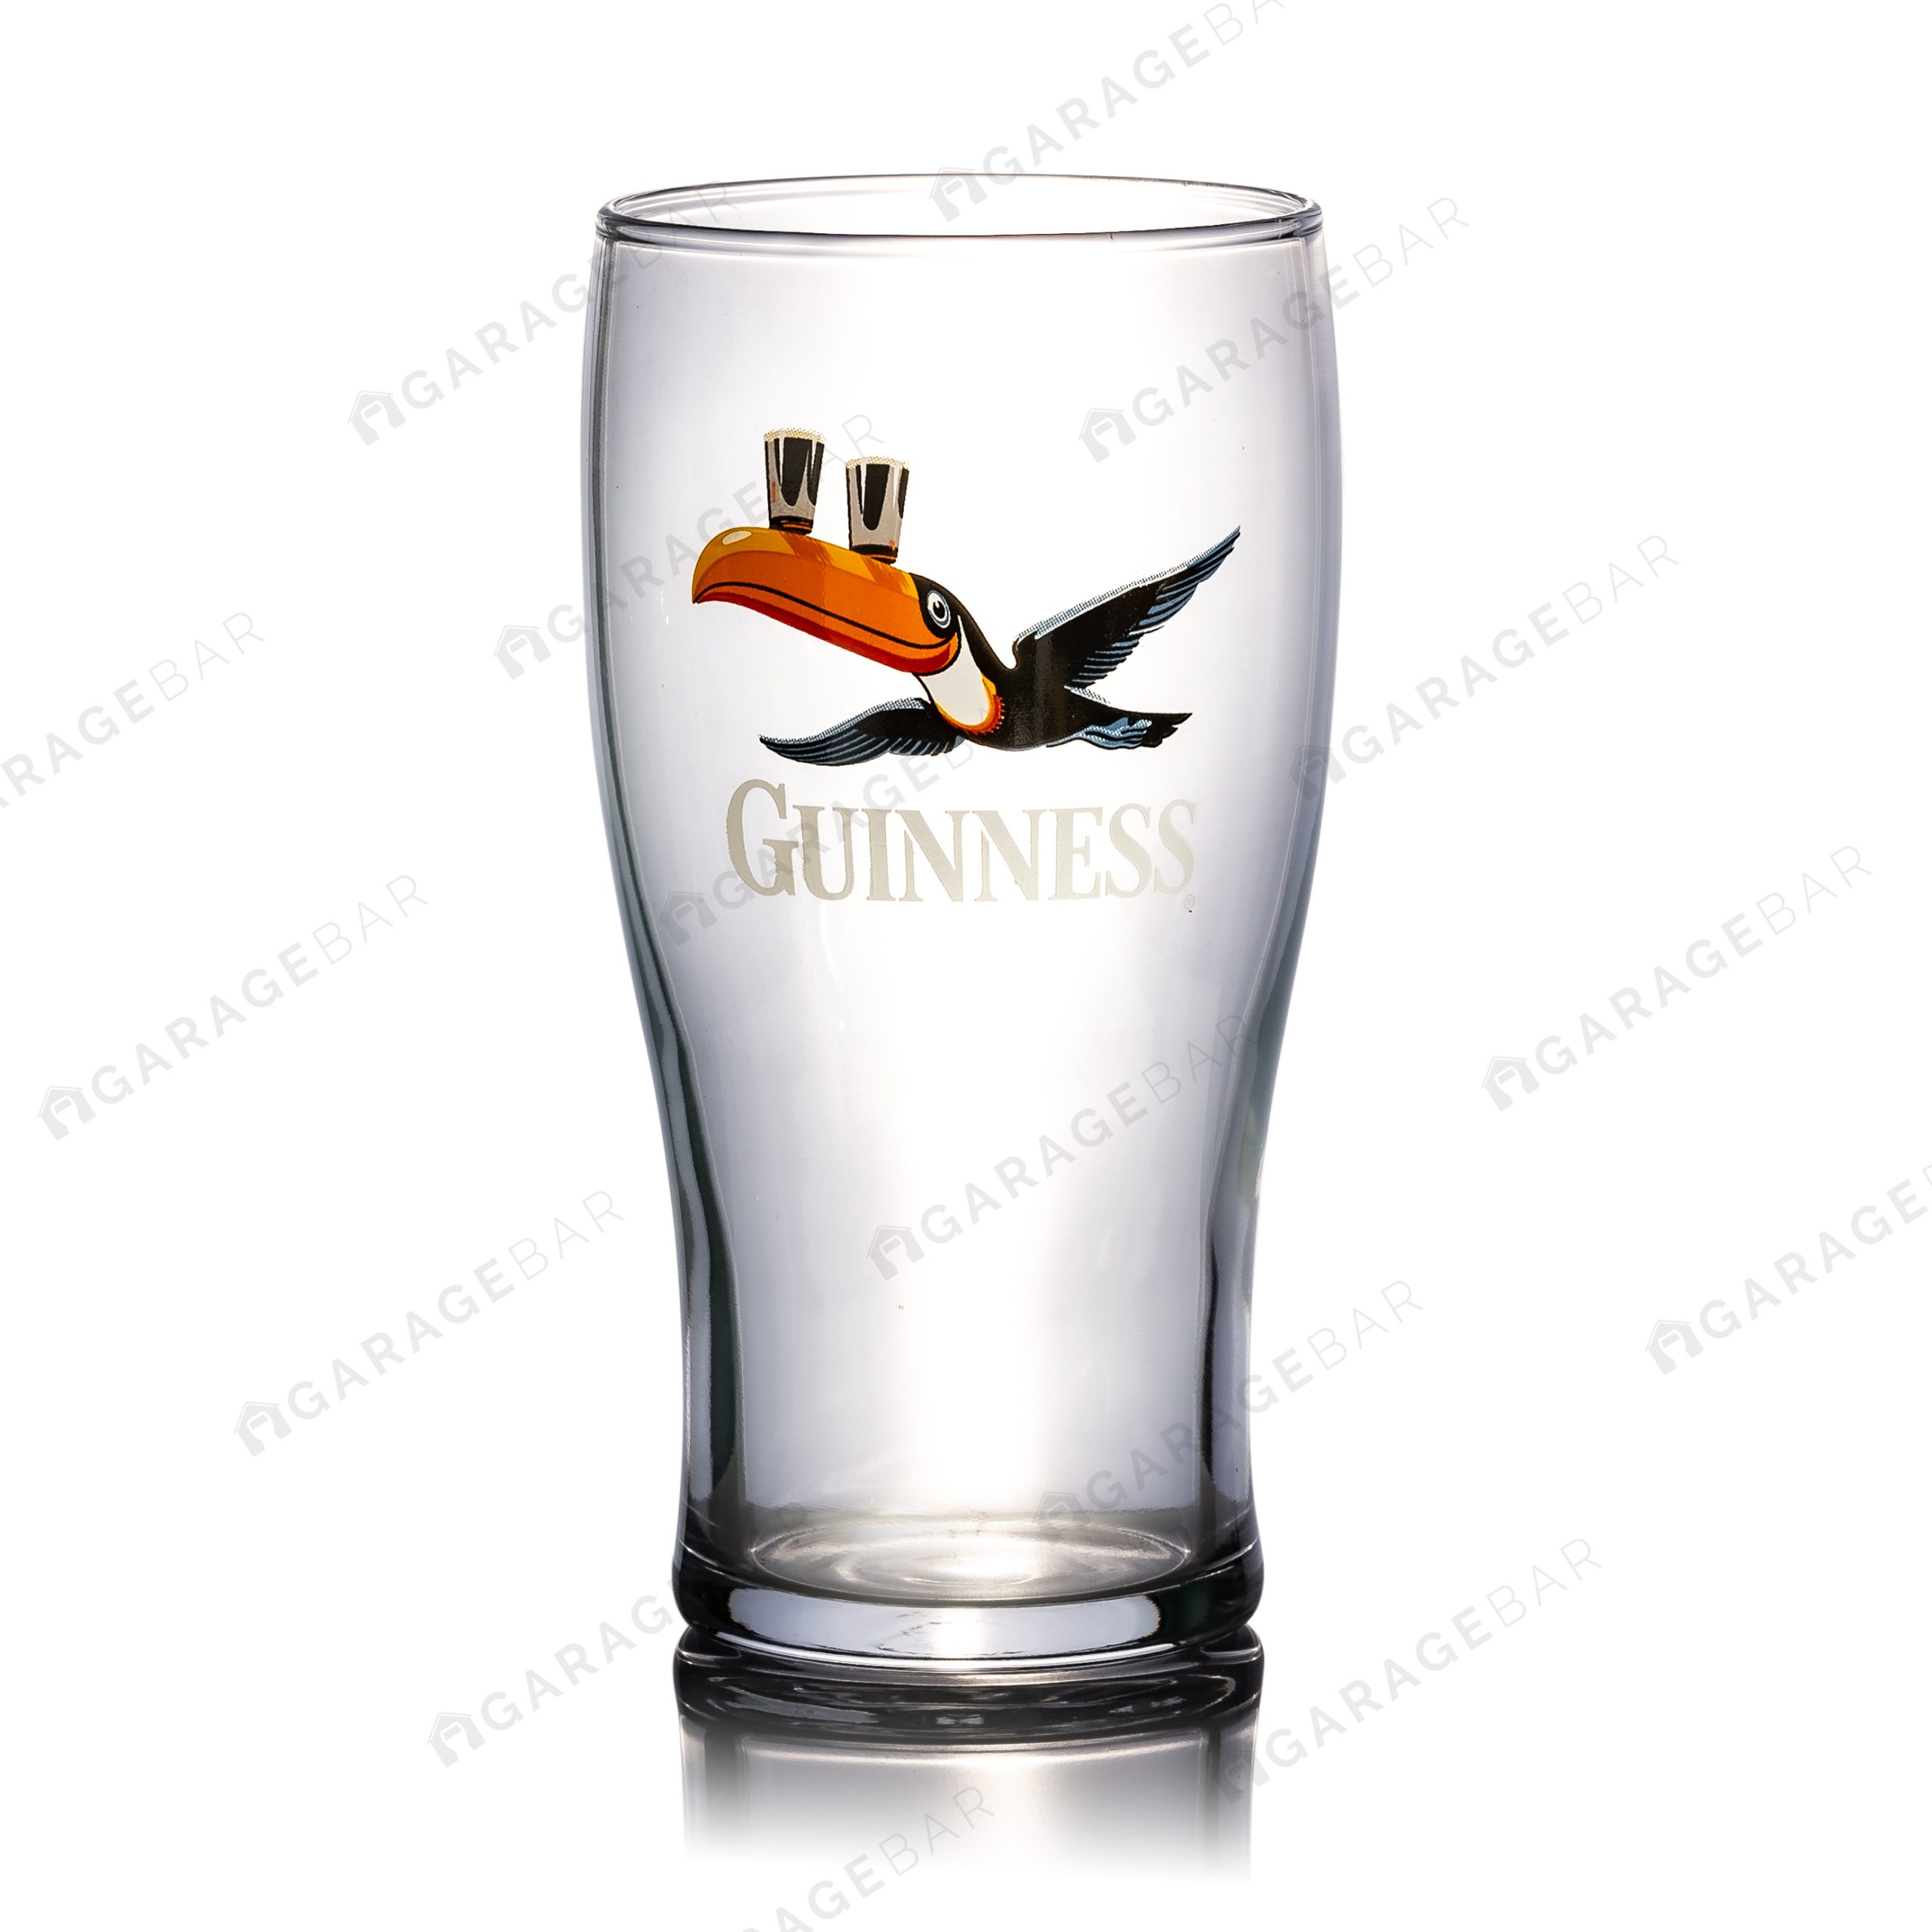 Guinness Flying Toucan Beer Glass